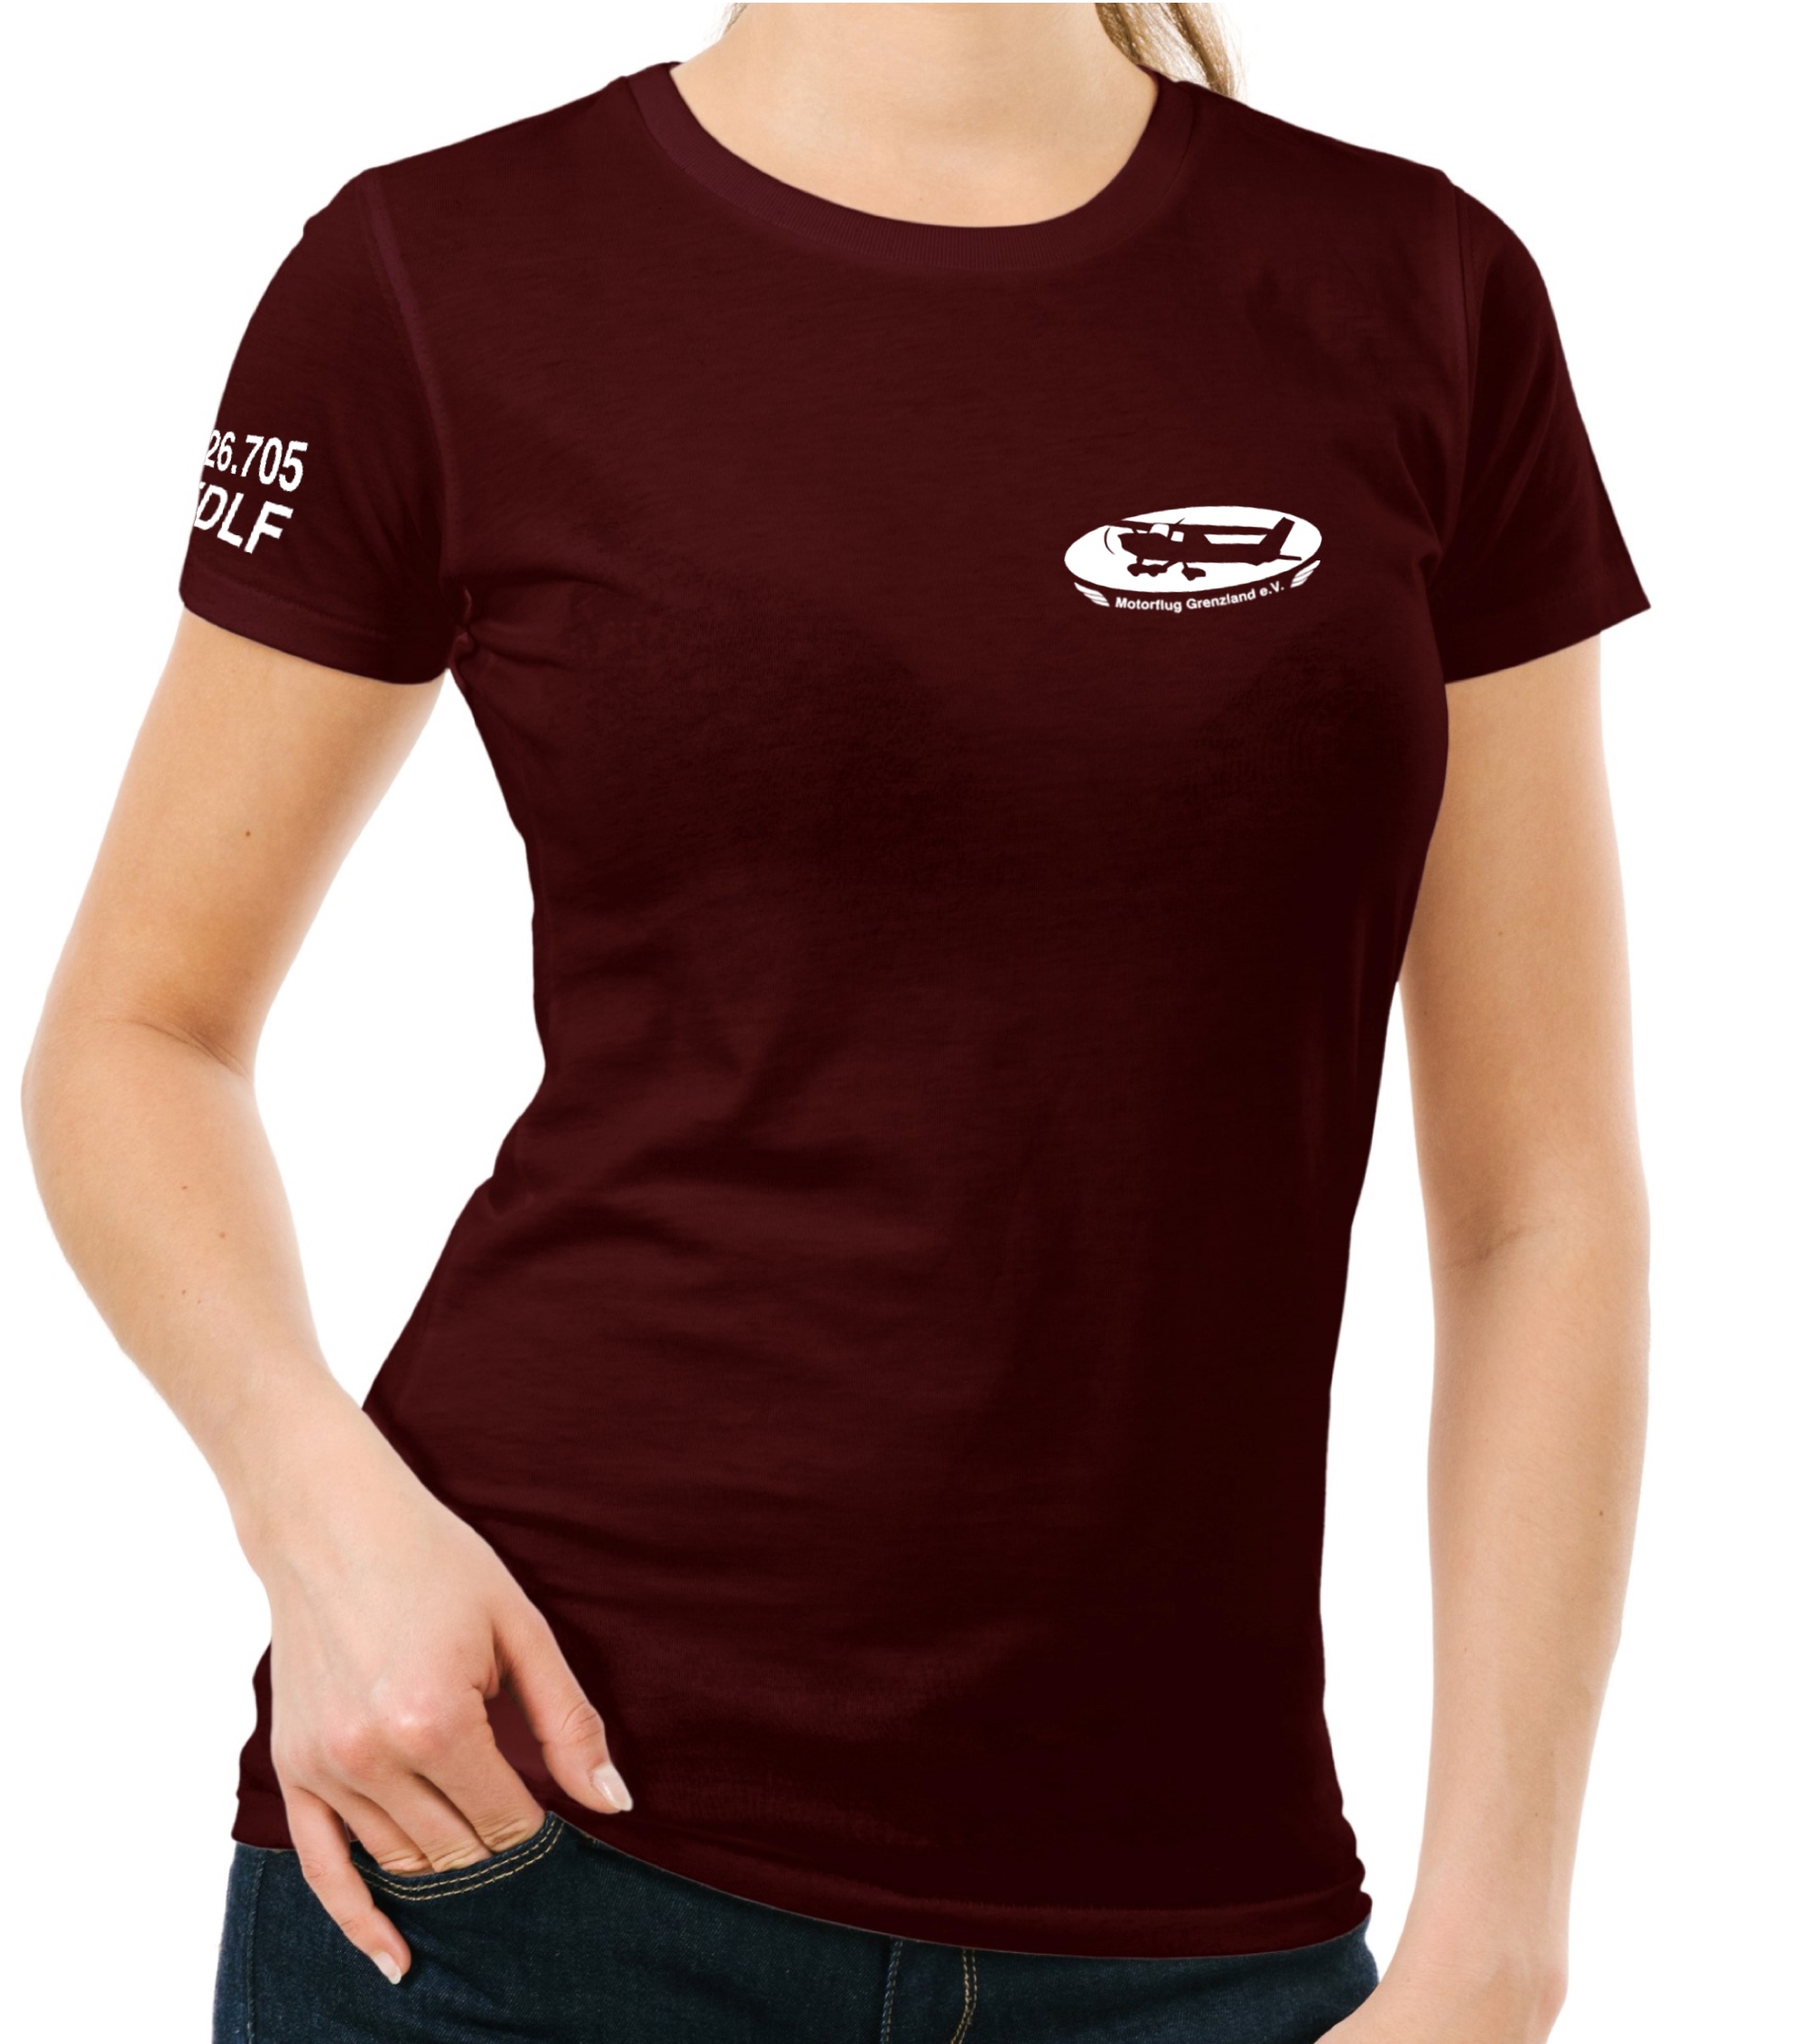 Damen T-Shirt MFG Grenzland e.V.